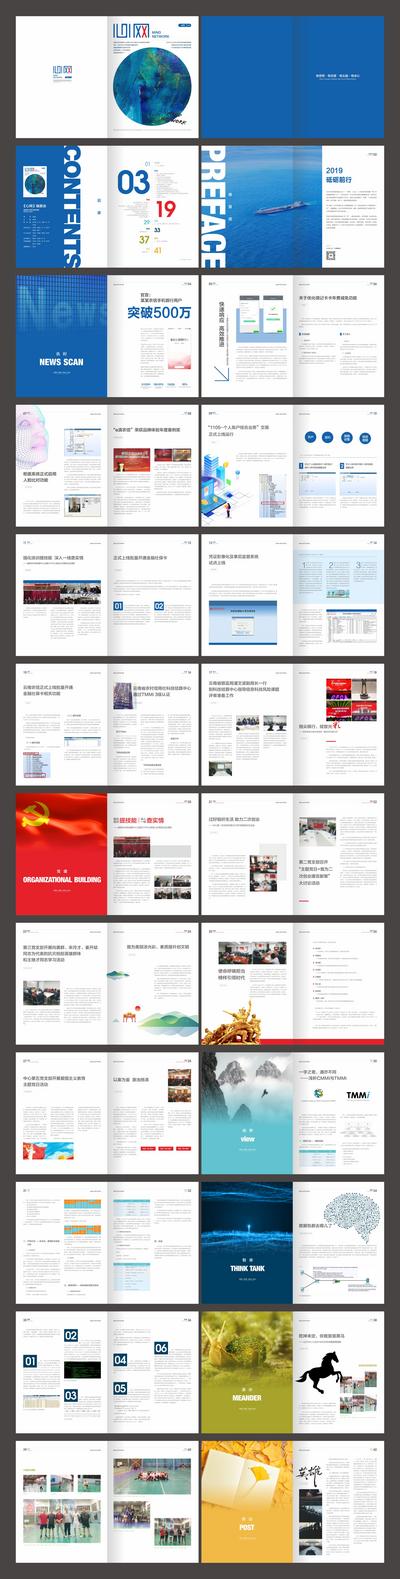 南门网 画册 宣传画册 企业文化 金融 党建 科技